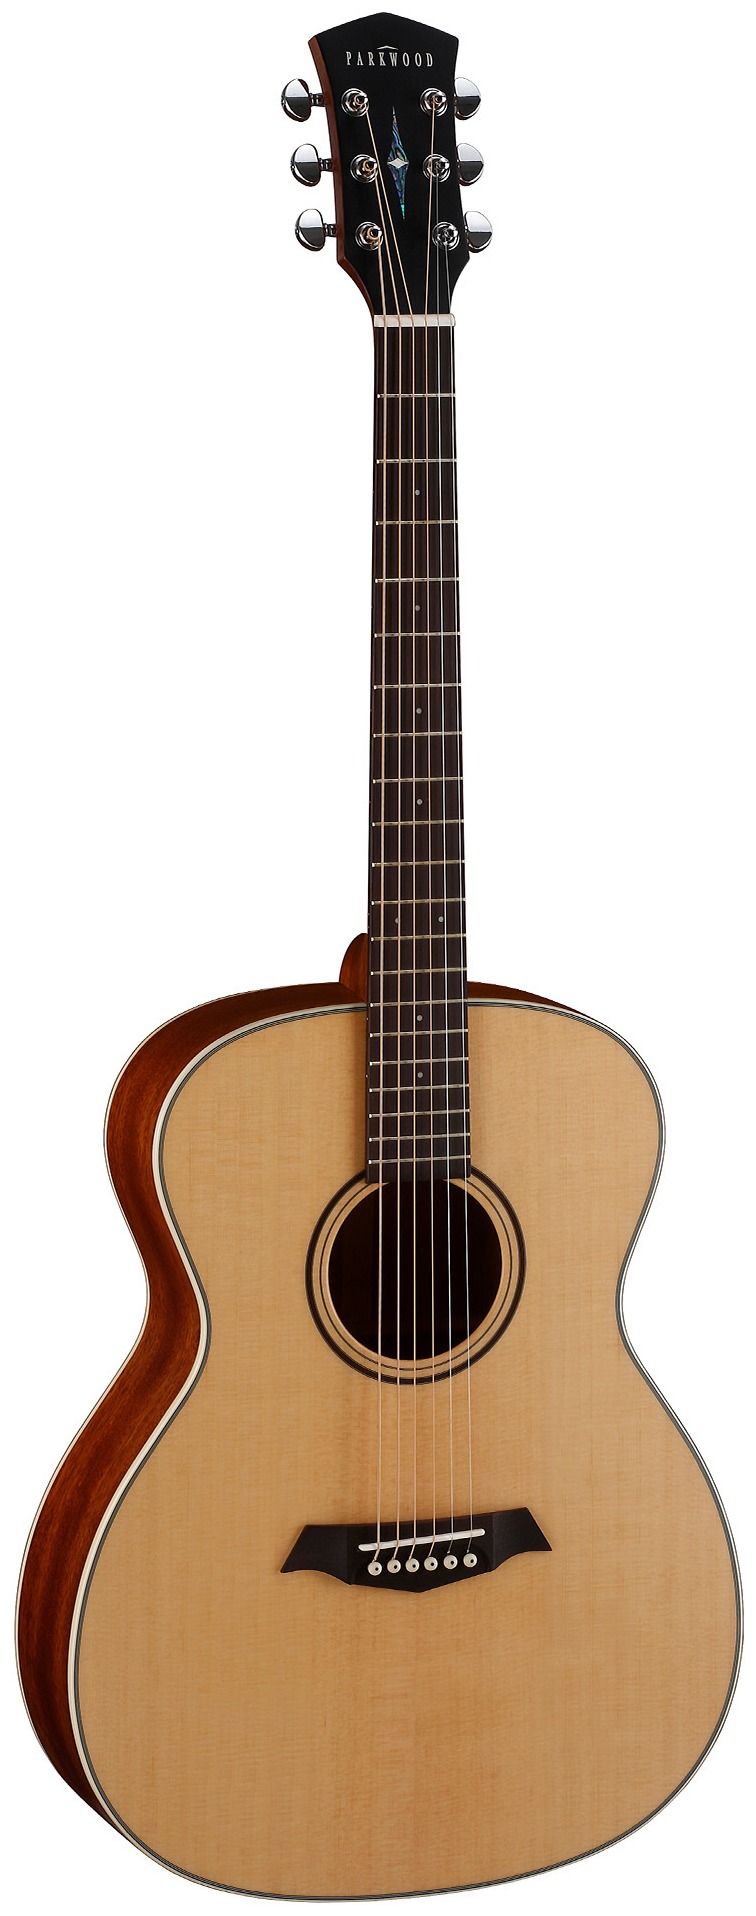 Акустические гитары Parkwood S22-GT (чехол в комплекте) электроакустические гитары parkwood s66 чехол в комплекте